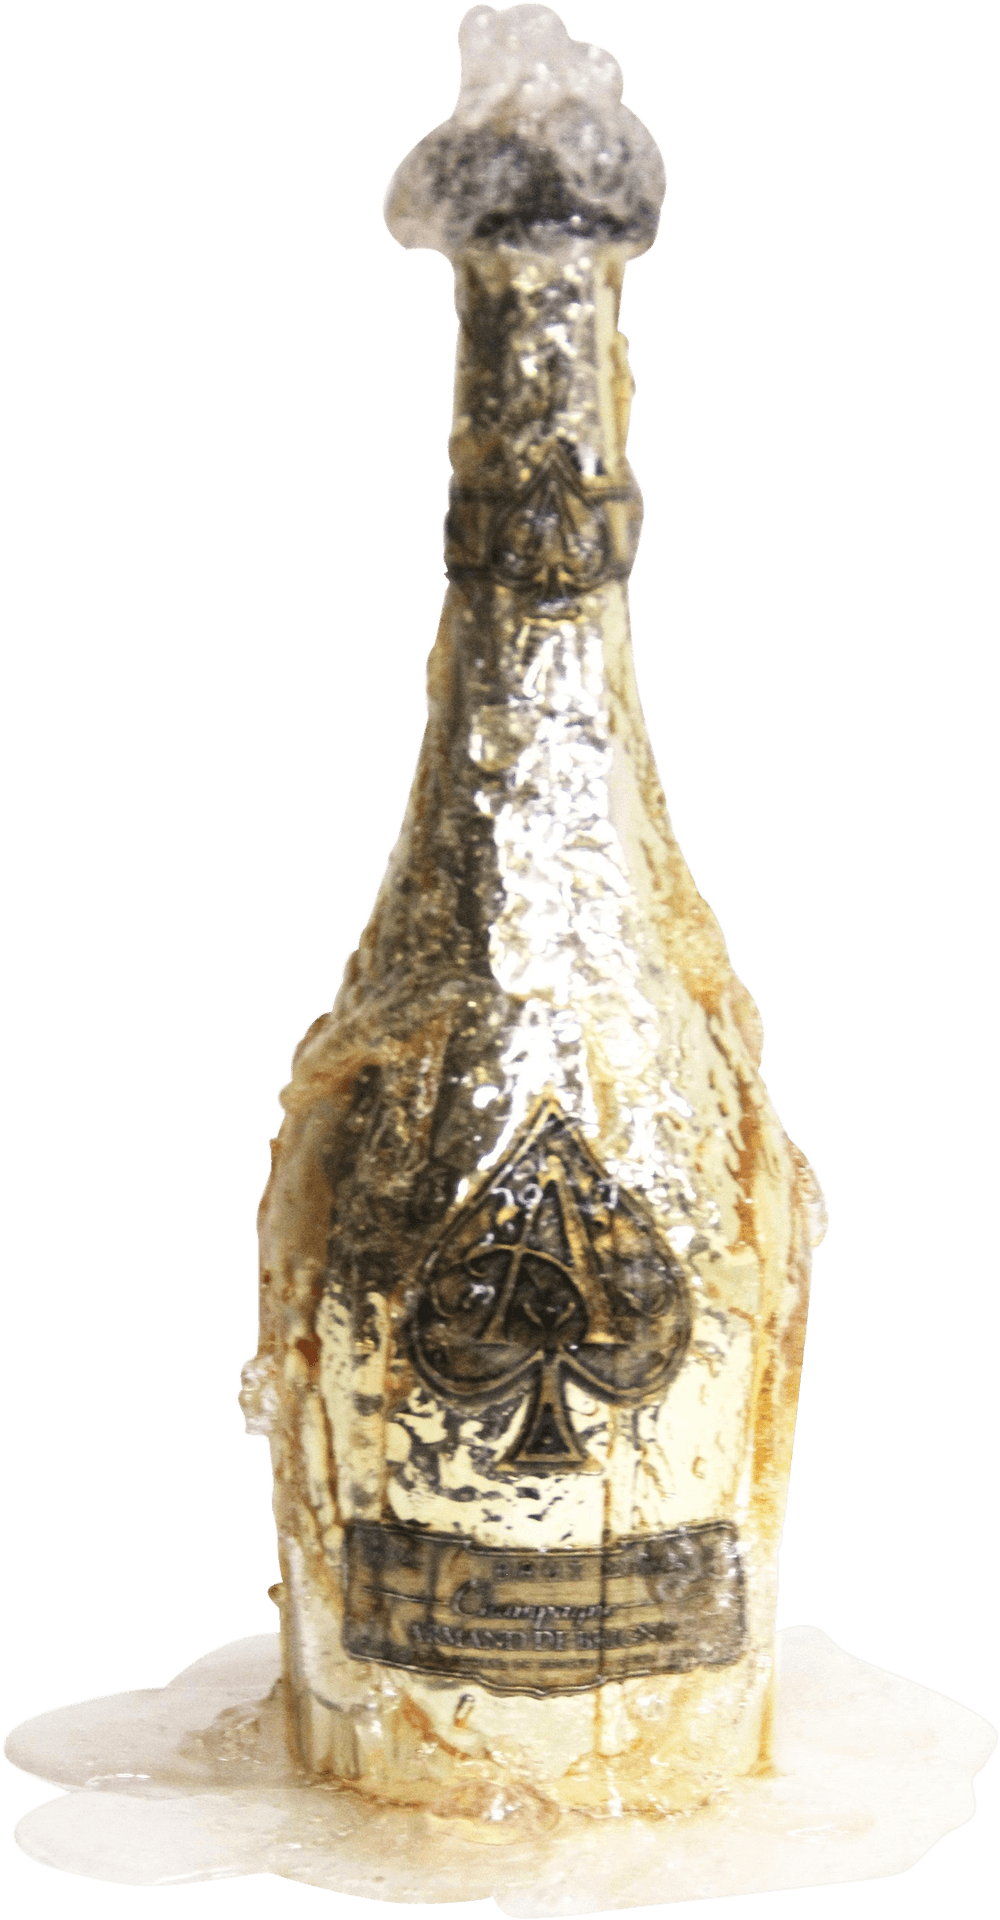 Golden Aceof Spades Champagne Bottle PNG